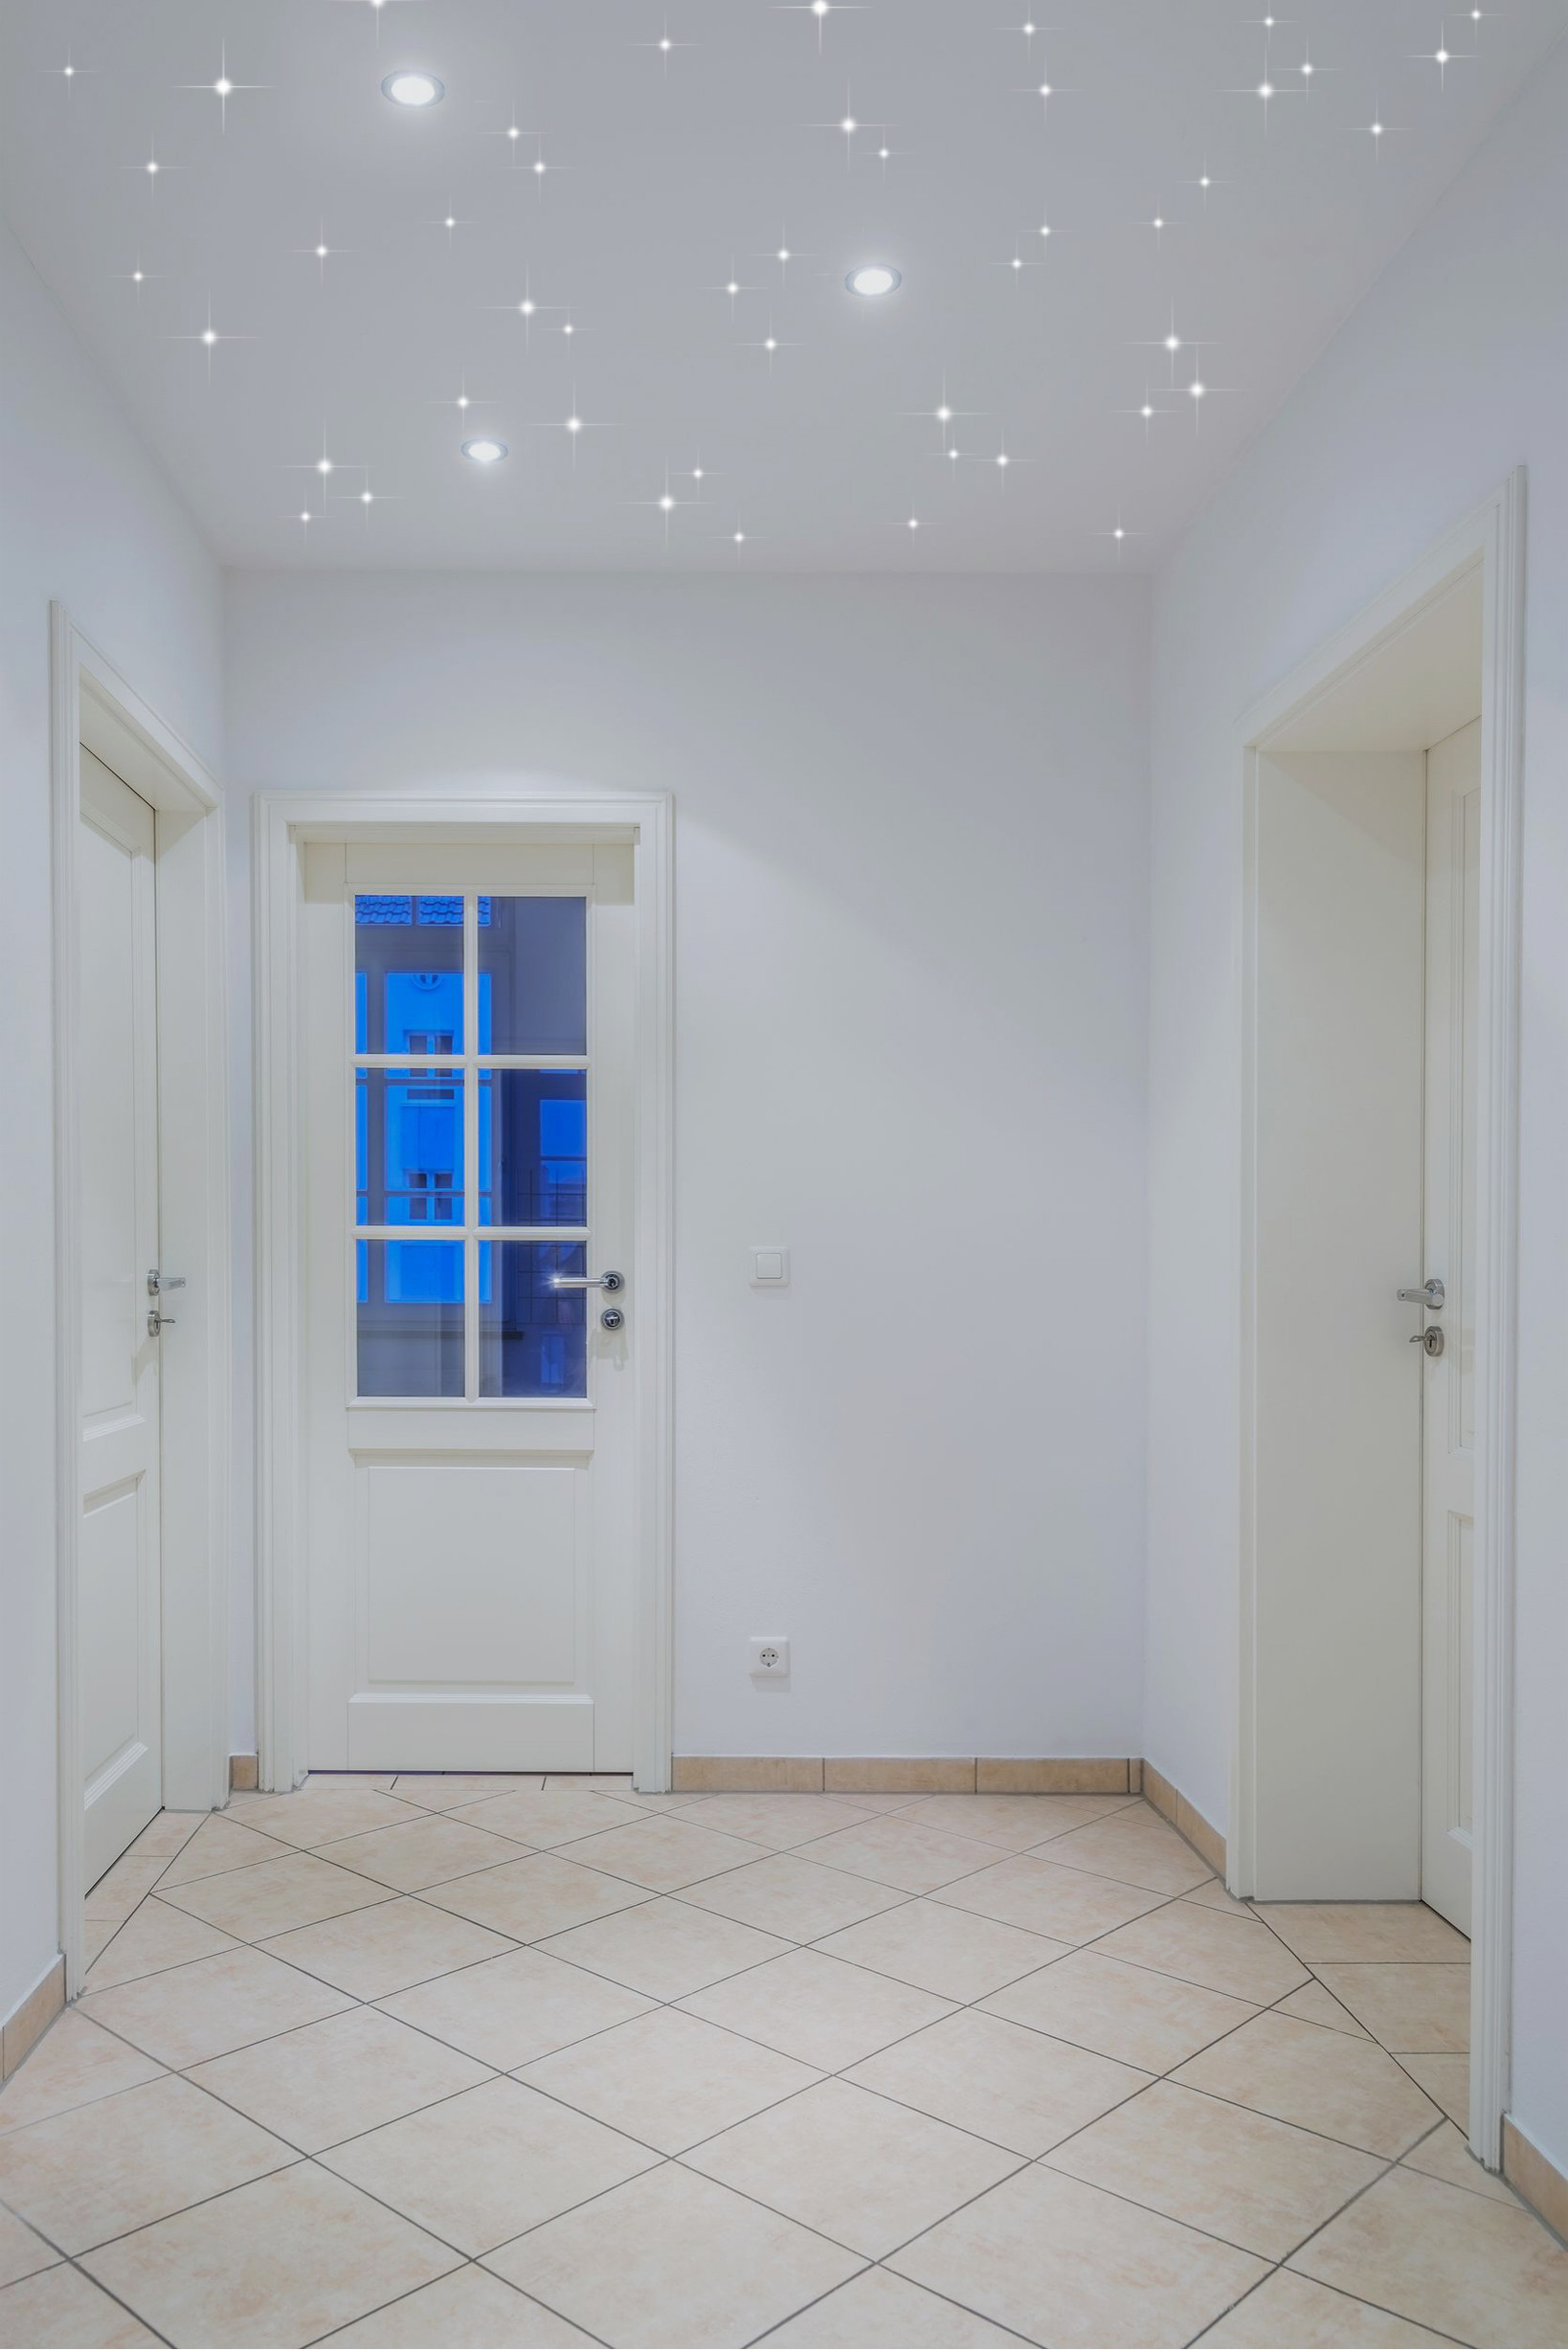 Haus Flur mit Pixlum LED Sternenhimmel und Einbaustrahlern als  Deckenleuchte - Hall - Other - by PIXLUM Deutschland GmbH - LED  Sternenhimmel | Houzz